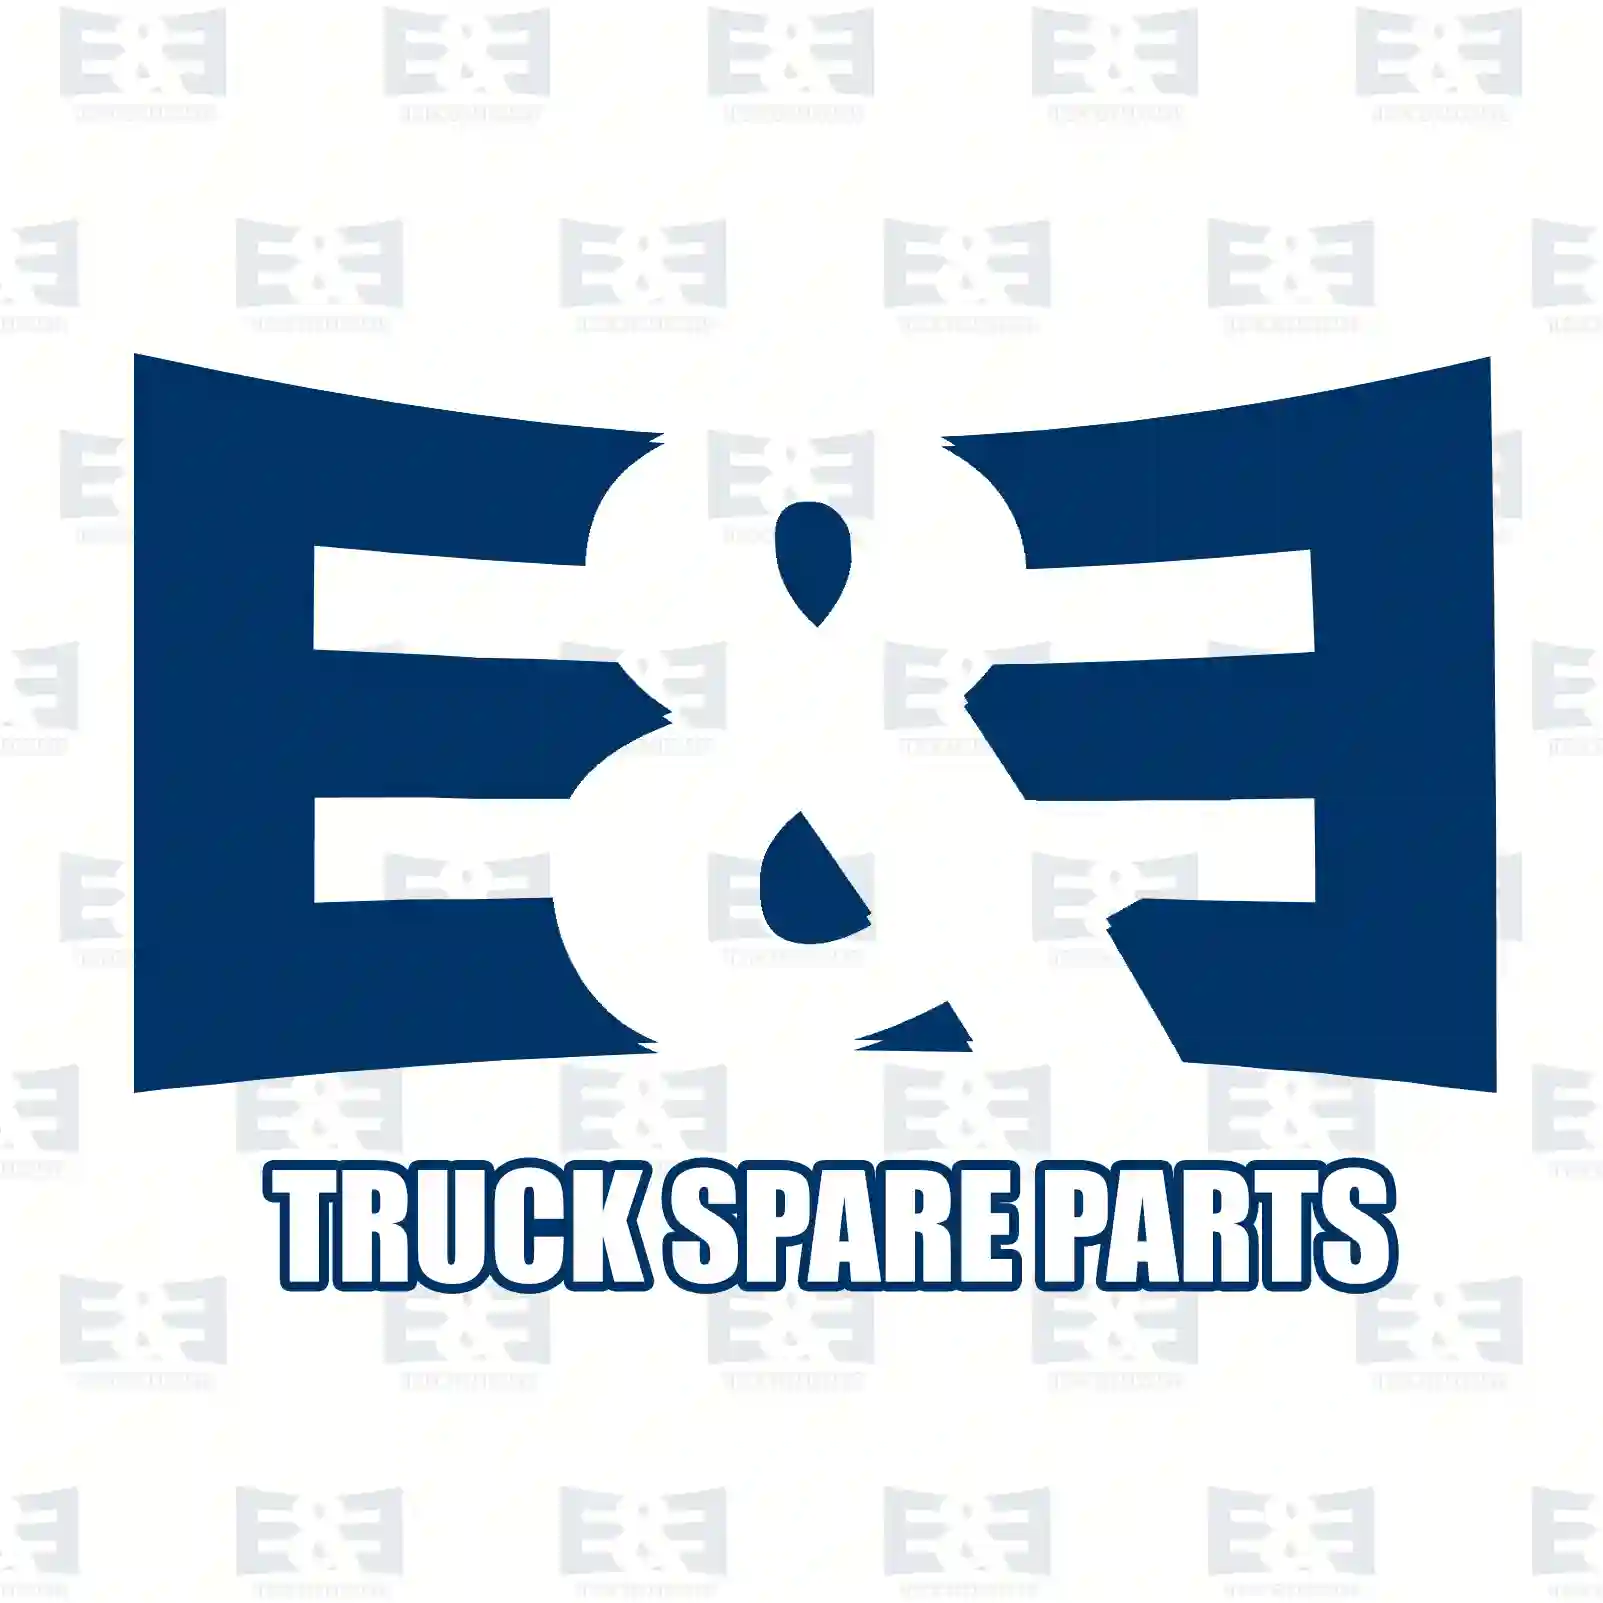 Shock absorber, 2E2283259, 0053267400, 0063260100, 0063261100, , ||  2E2283259 E&E Truck Spare Parts | Truck Spare Parts, Auotomotive Spare Parts Shock absorber, 2E2283259, 0053267400, 0063260100, 0063261100, , ||  2E2283259 E&E Truck Spare Parts | Truck Spare Parts, Auotomotive Spare Parts